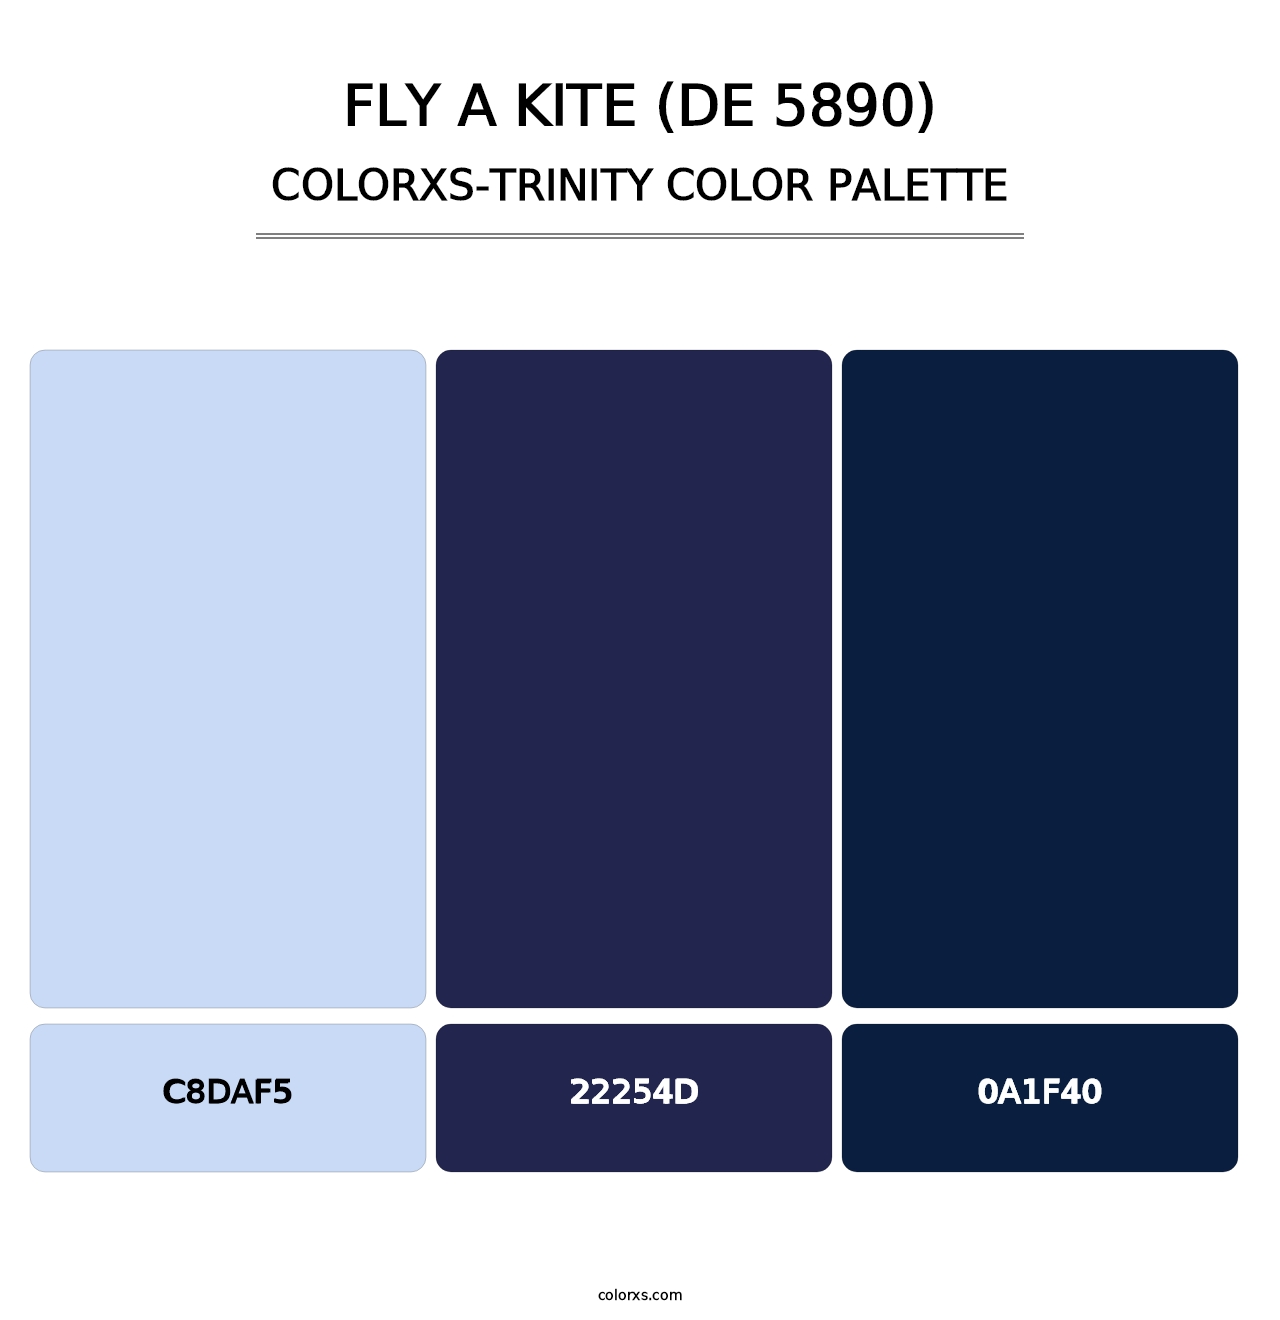 Fly a Kite (DE 5890) - Colorxs Trinity Palette